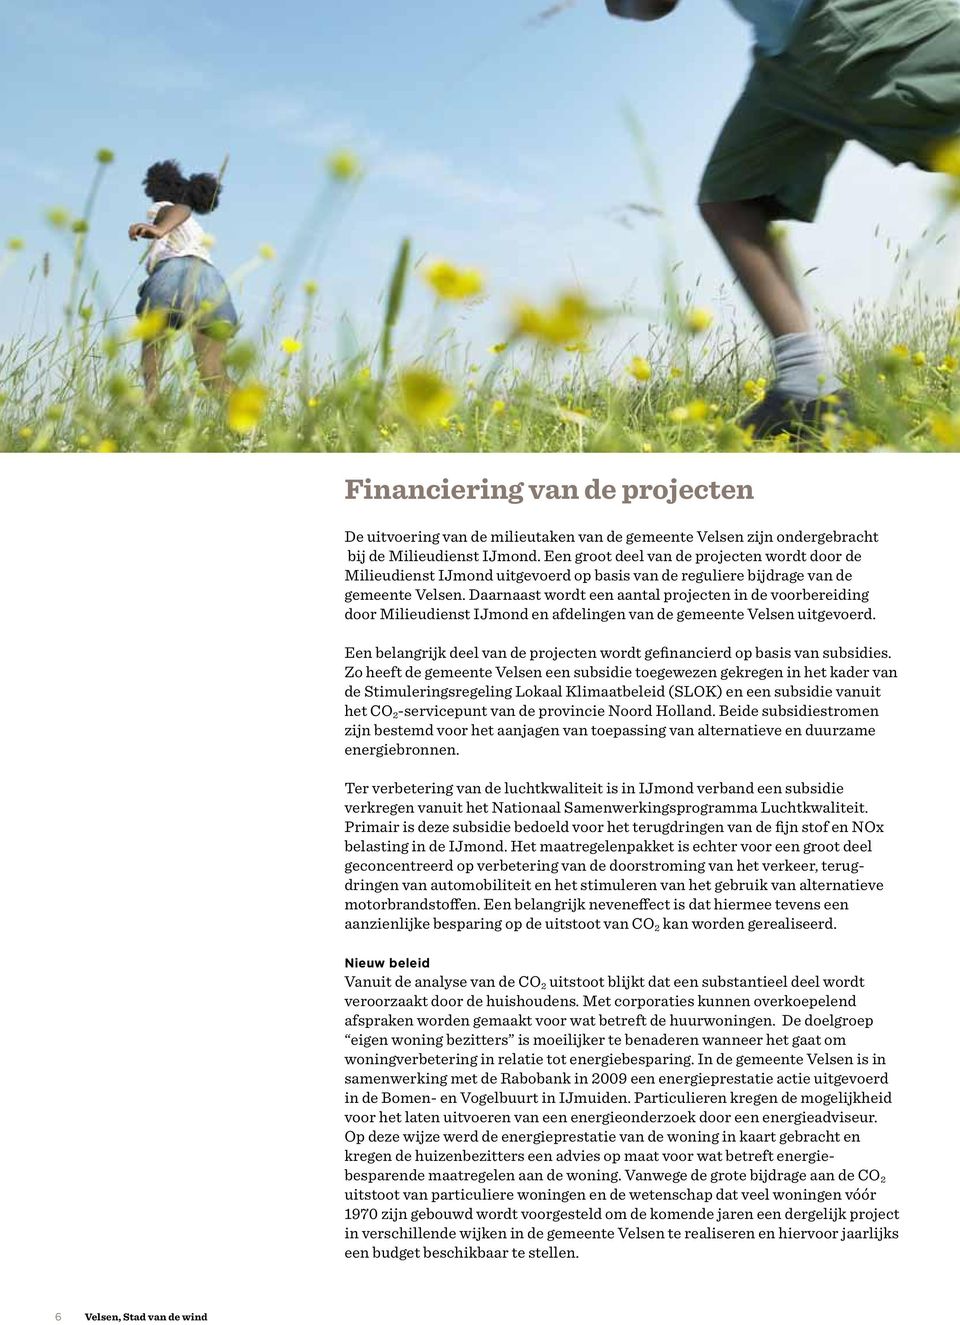 Daarnaast wordt een aantal projecten in de voorbereiding door Milieudienst IJmond en afdelingen van de gemeente Velsen uitgevoerd.